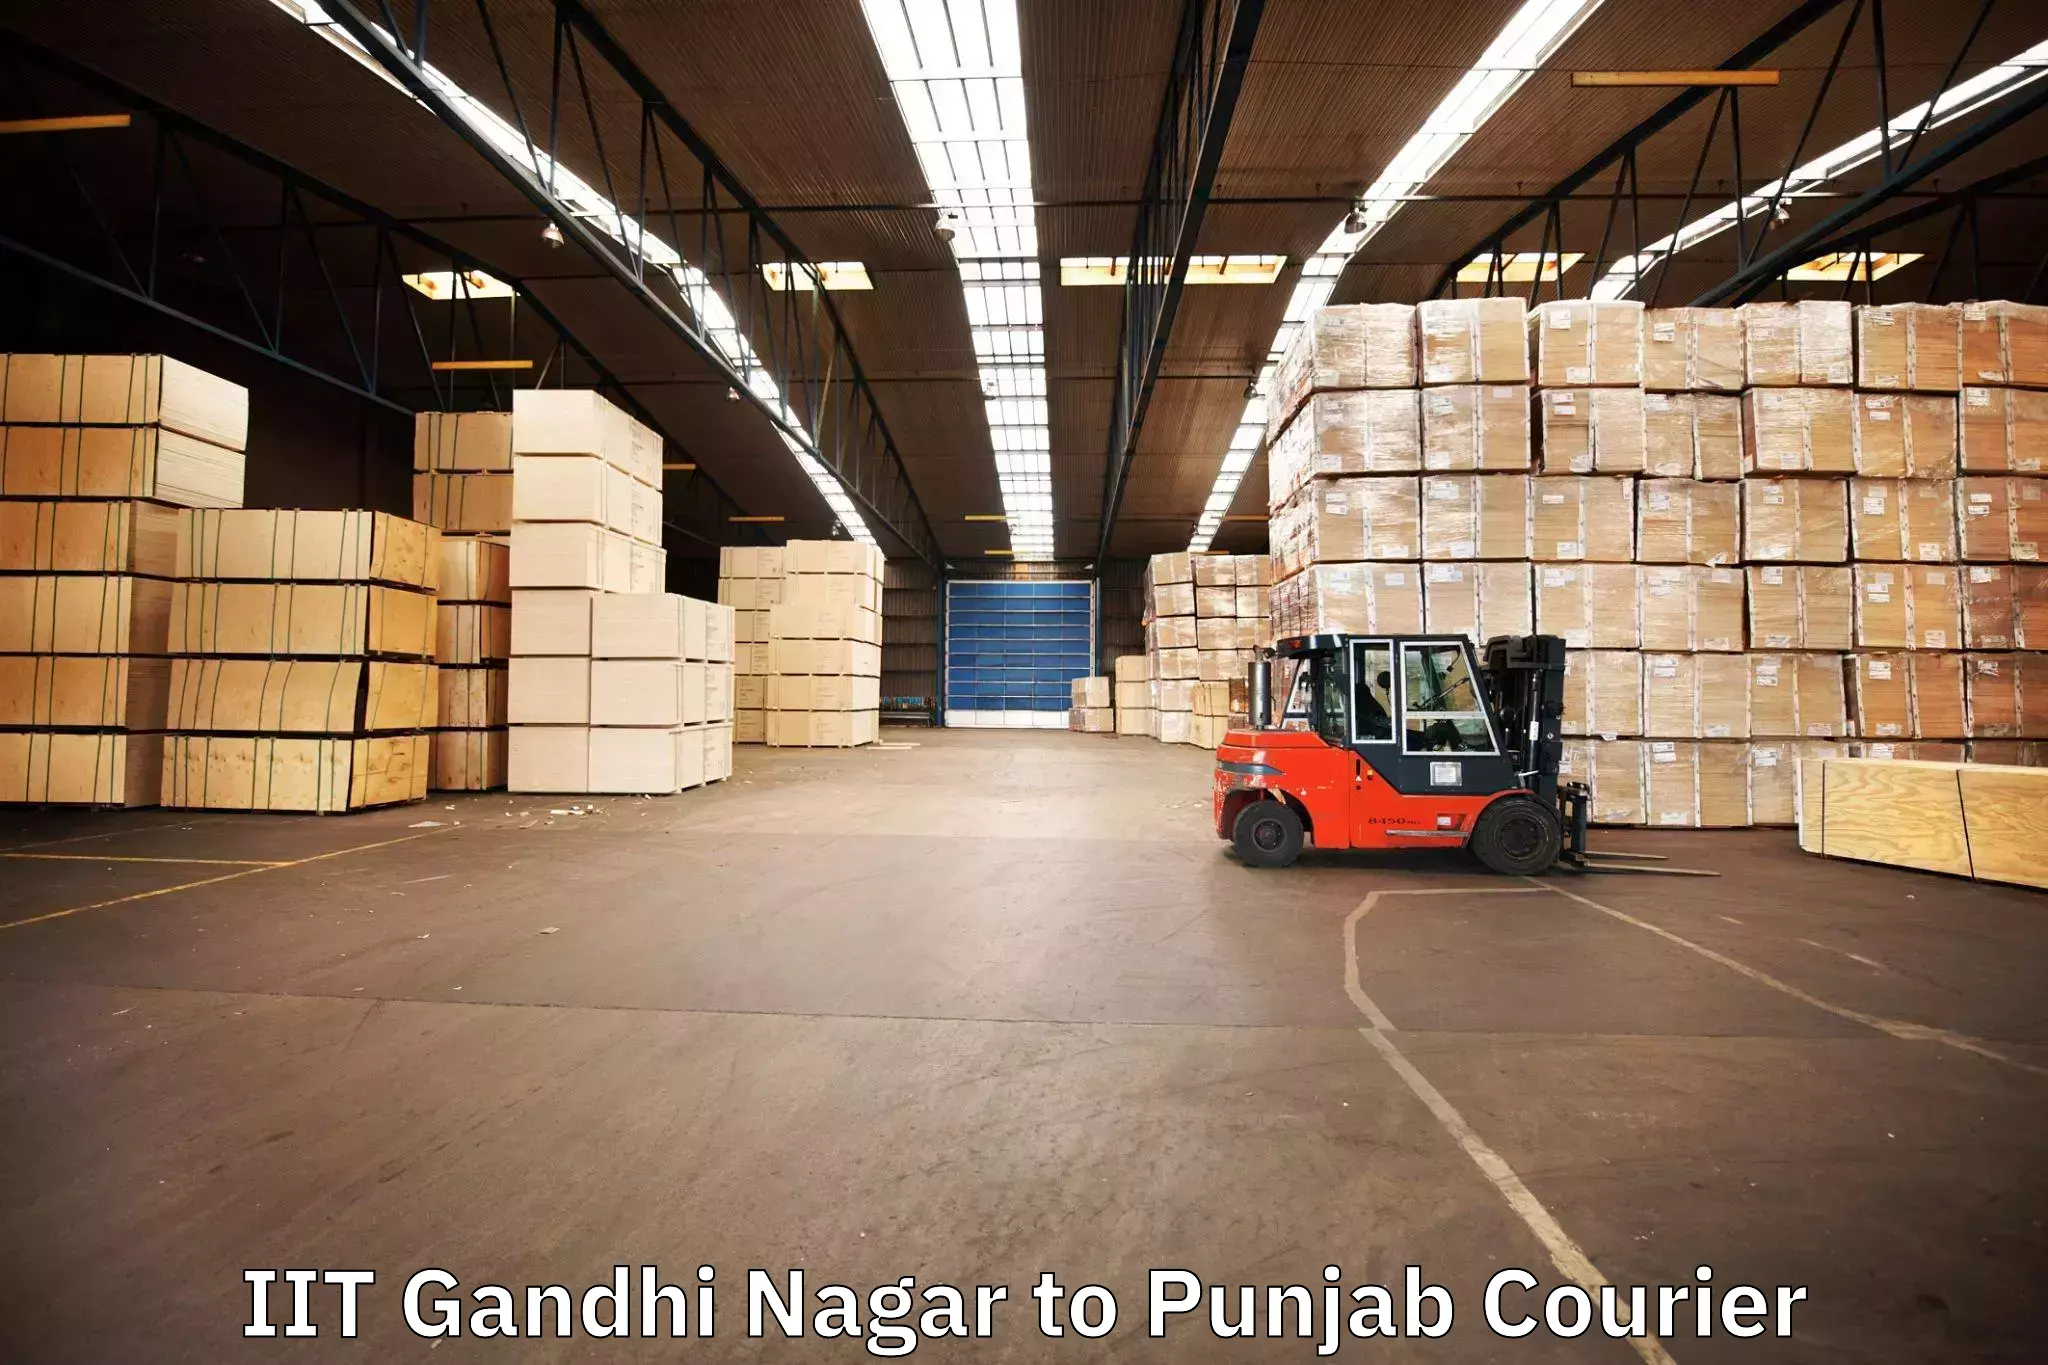 Trusted furniture movers IIT Gandhi Nagar to Punjab